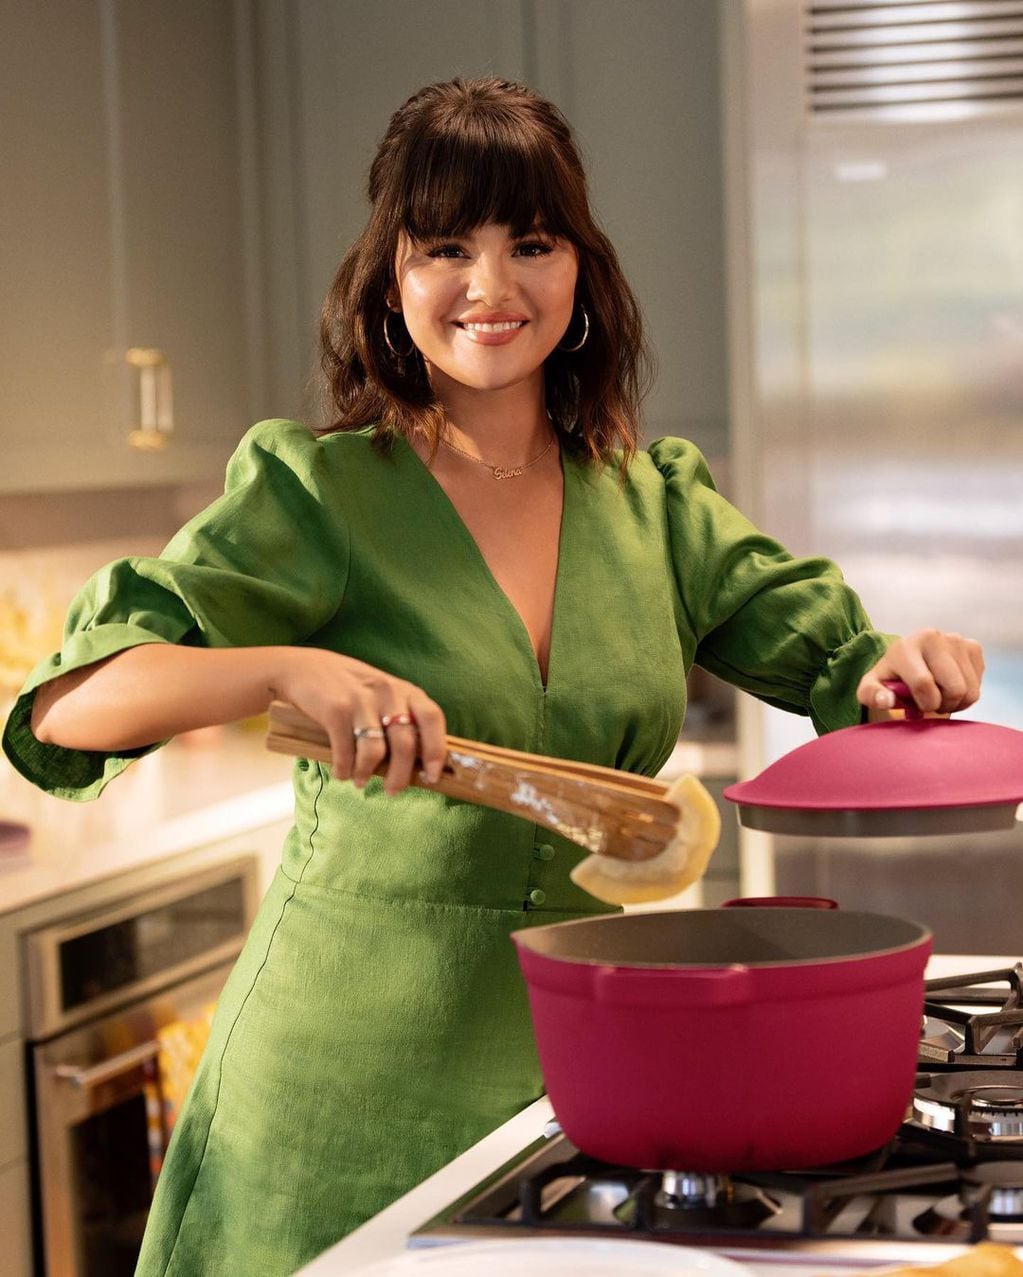 Selena Gómez aprendió a cocinar gracias al programa "Selena + Chef" de HBO Max